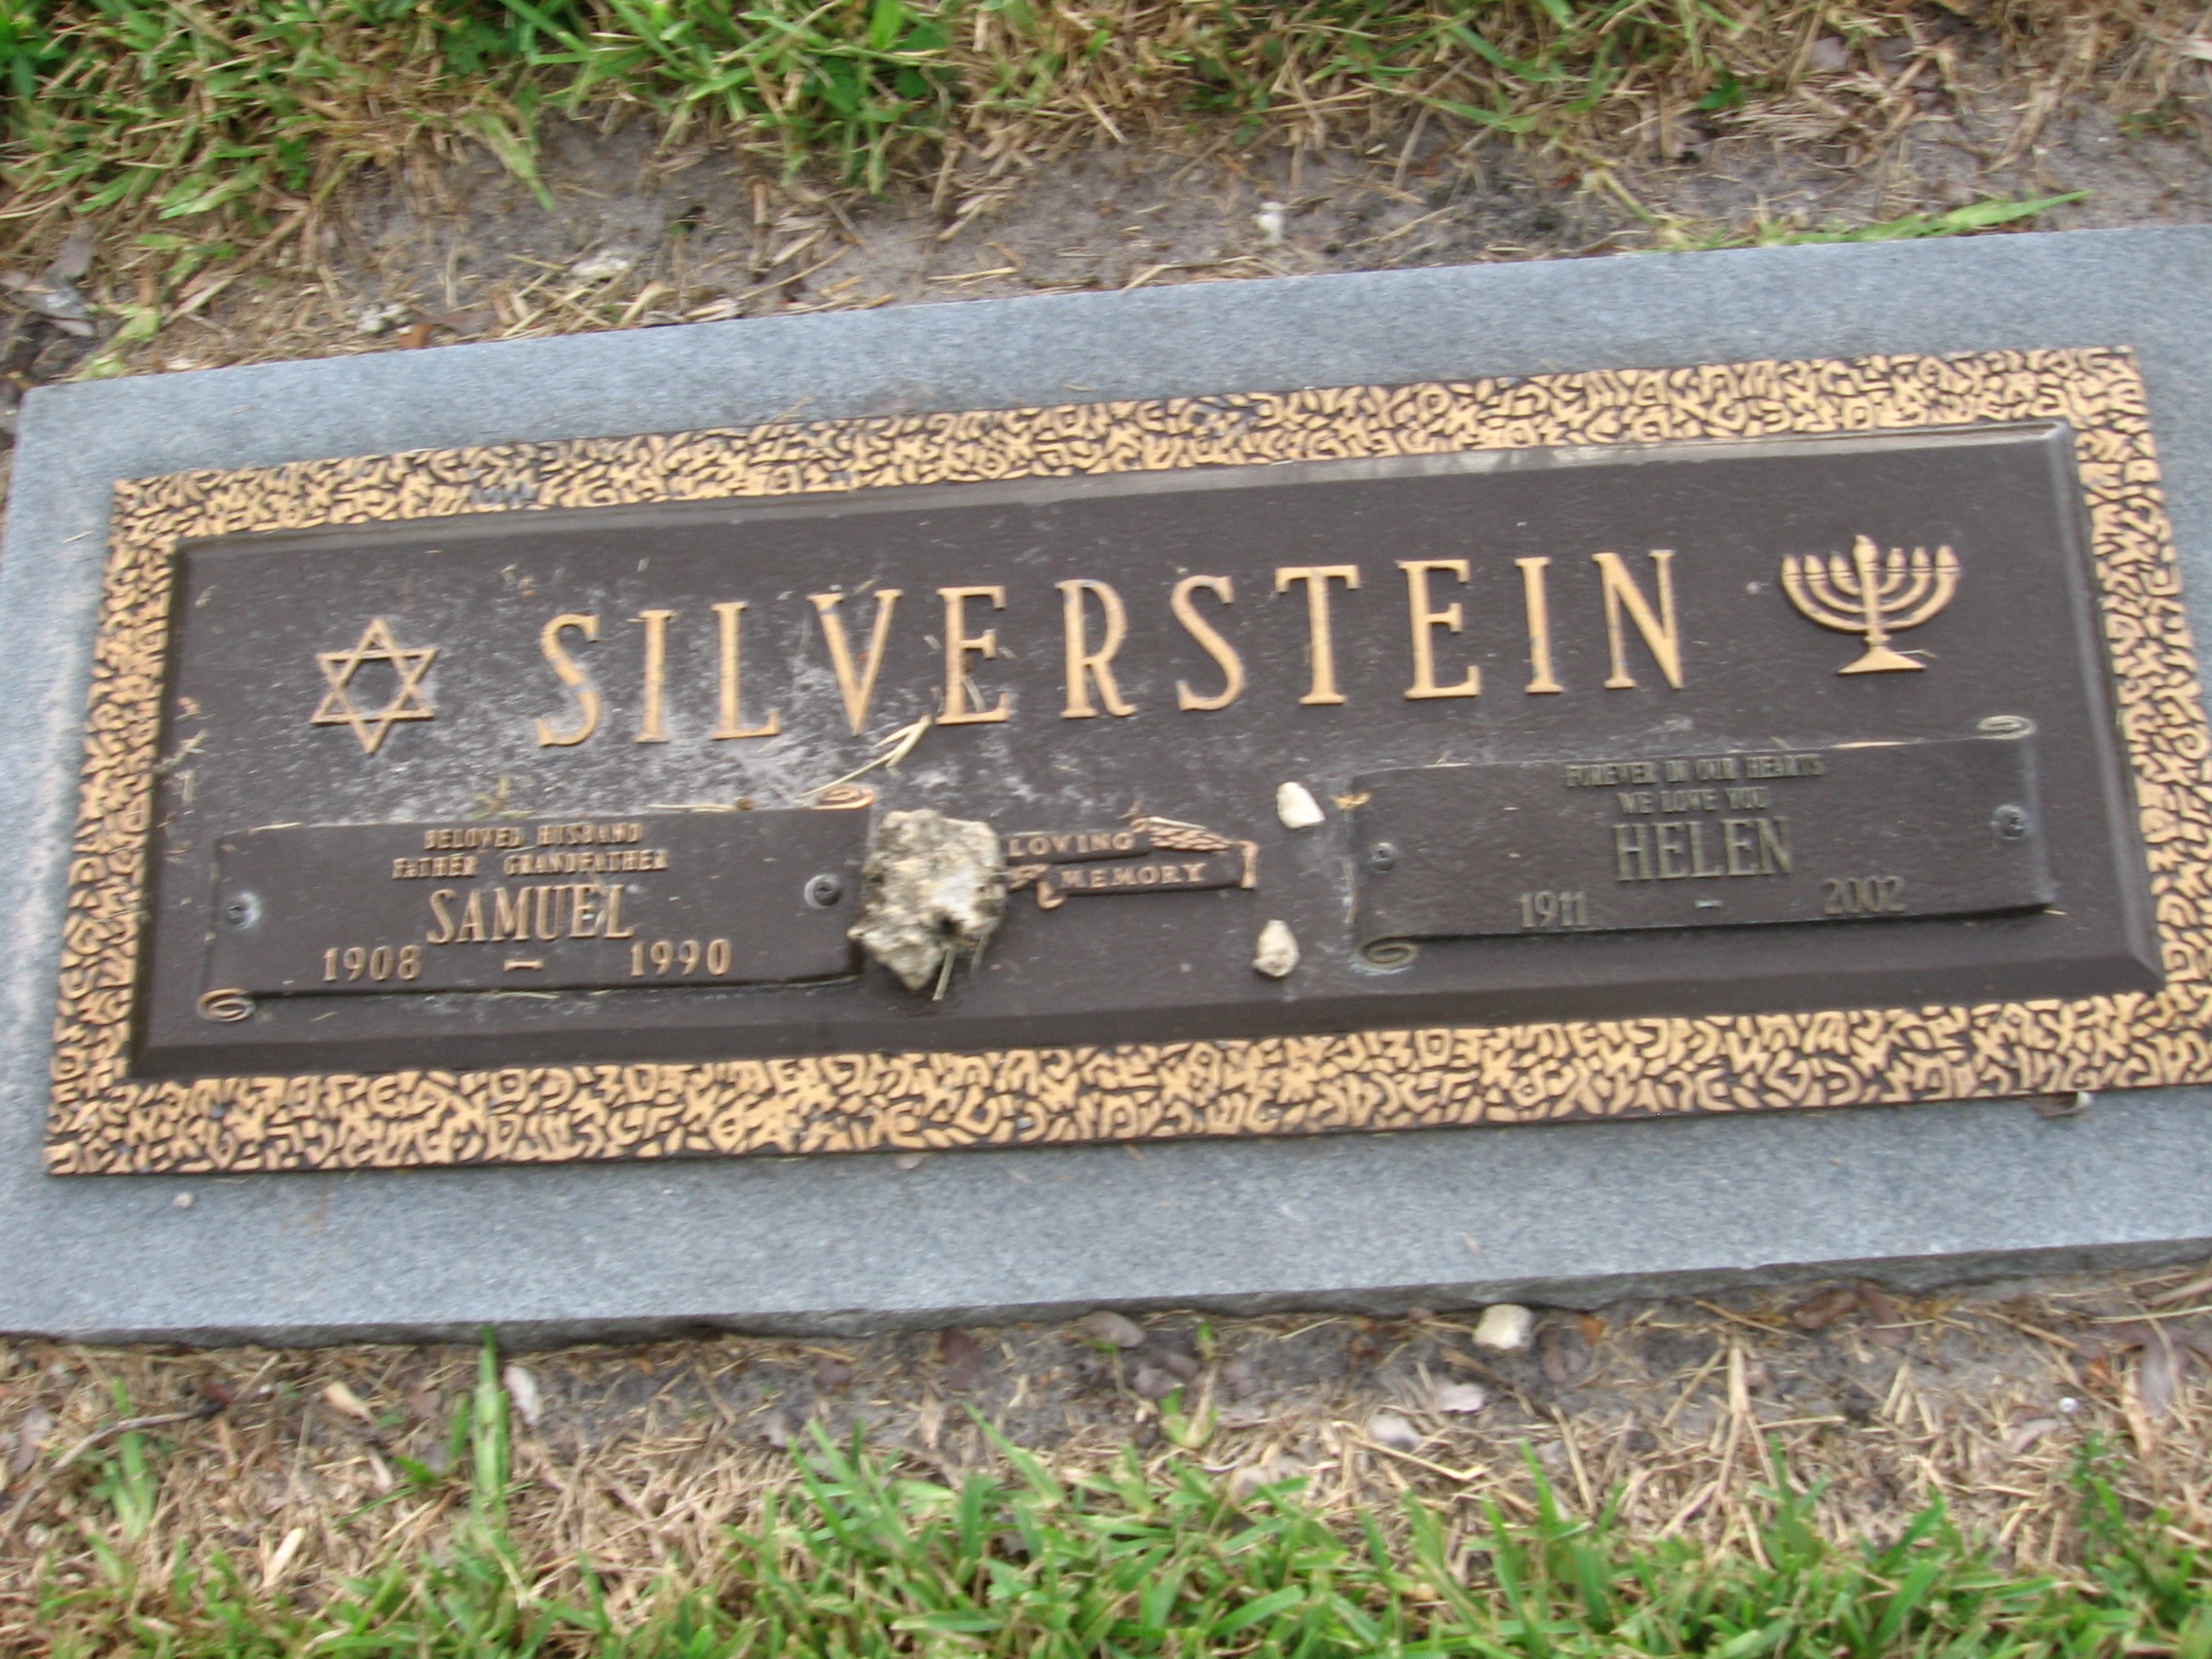 Samuel Silverstein